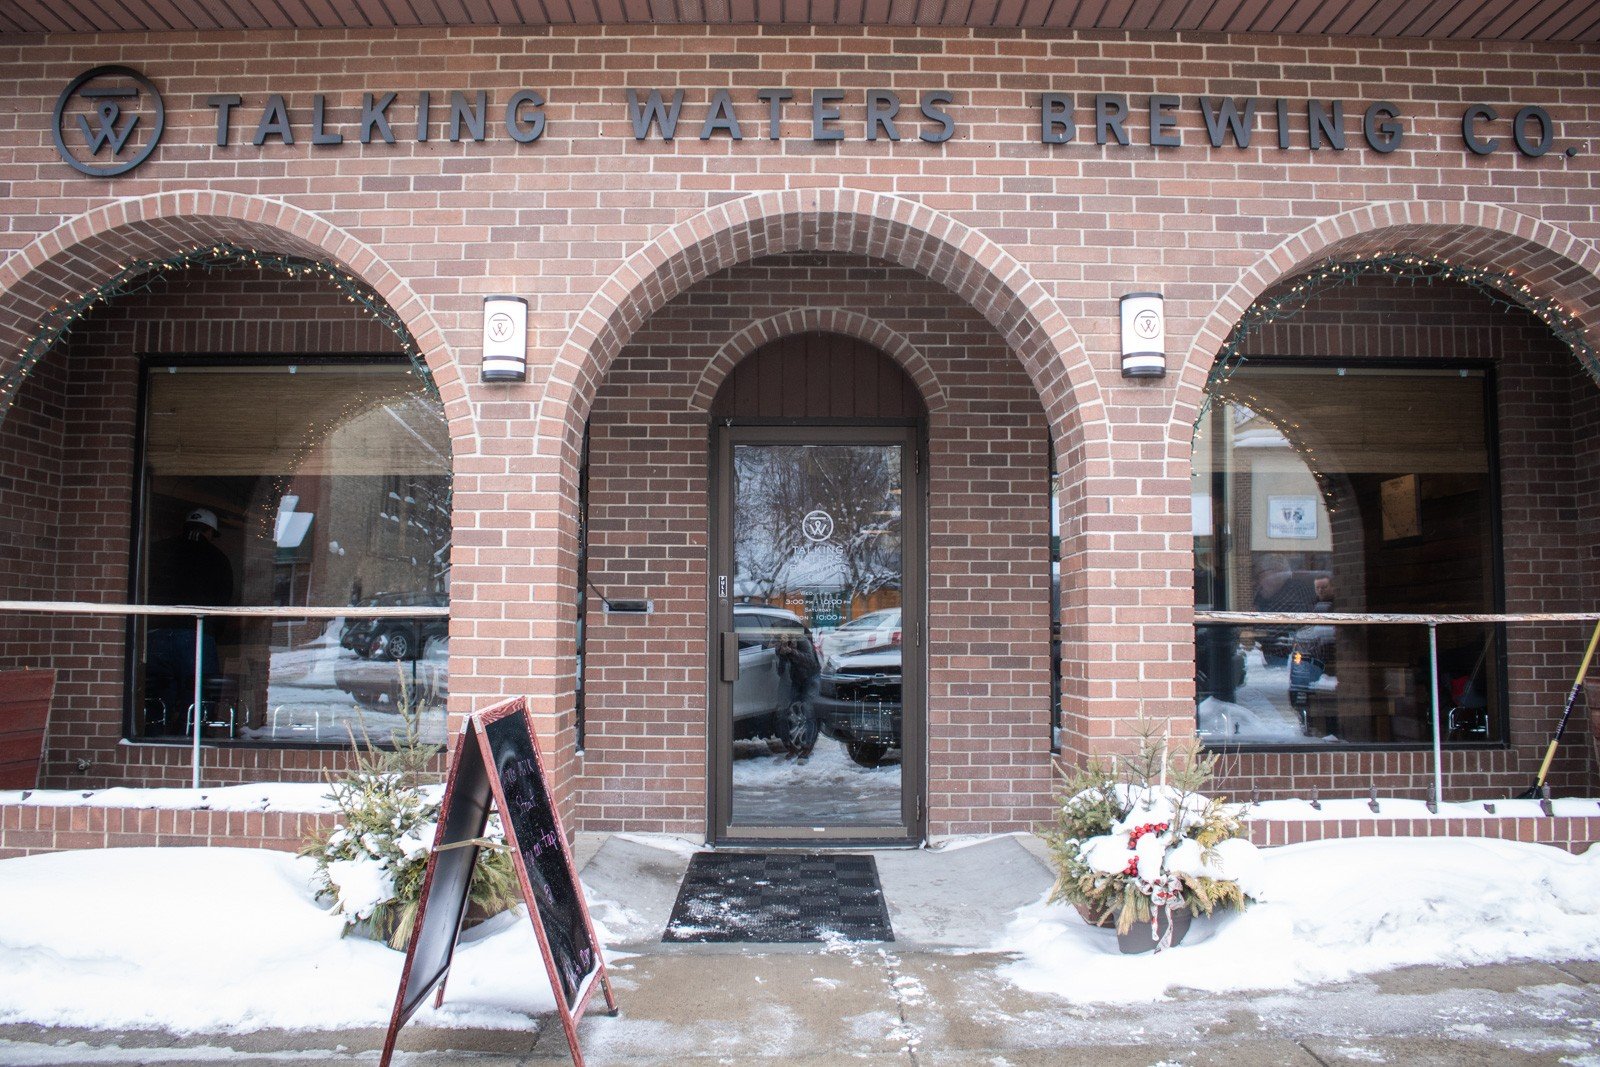 Talking Waters Brewing Company Brauerei aus Vereinigte Staaten